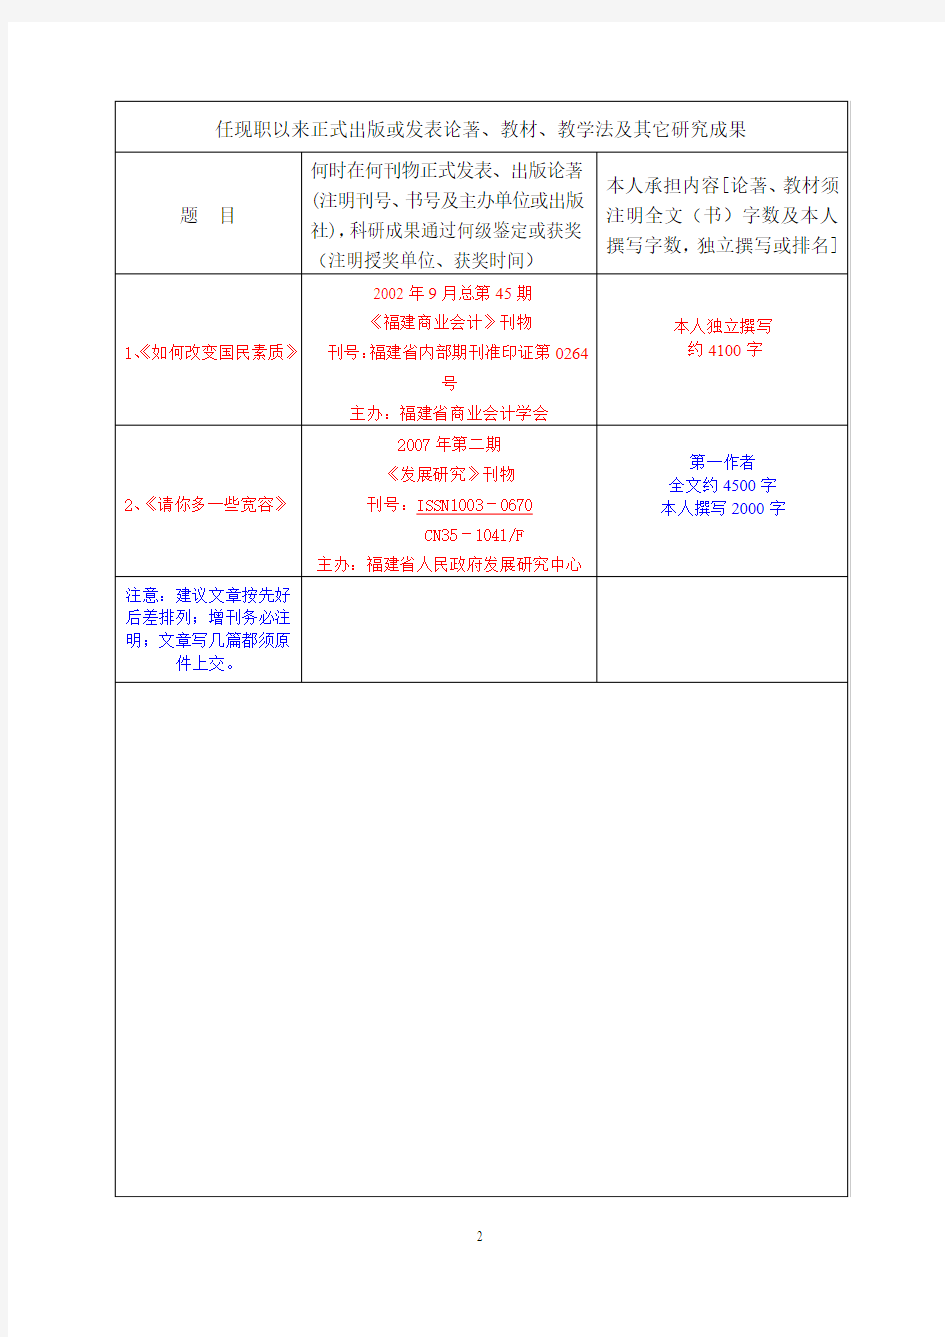 福建省高等学校讲师职务任职资格评审简明表